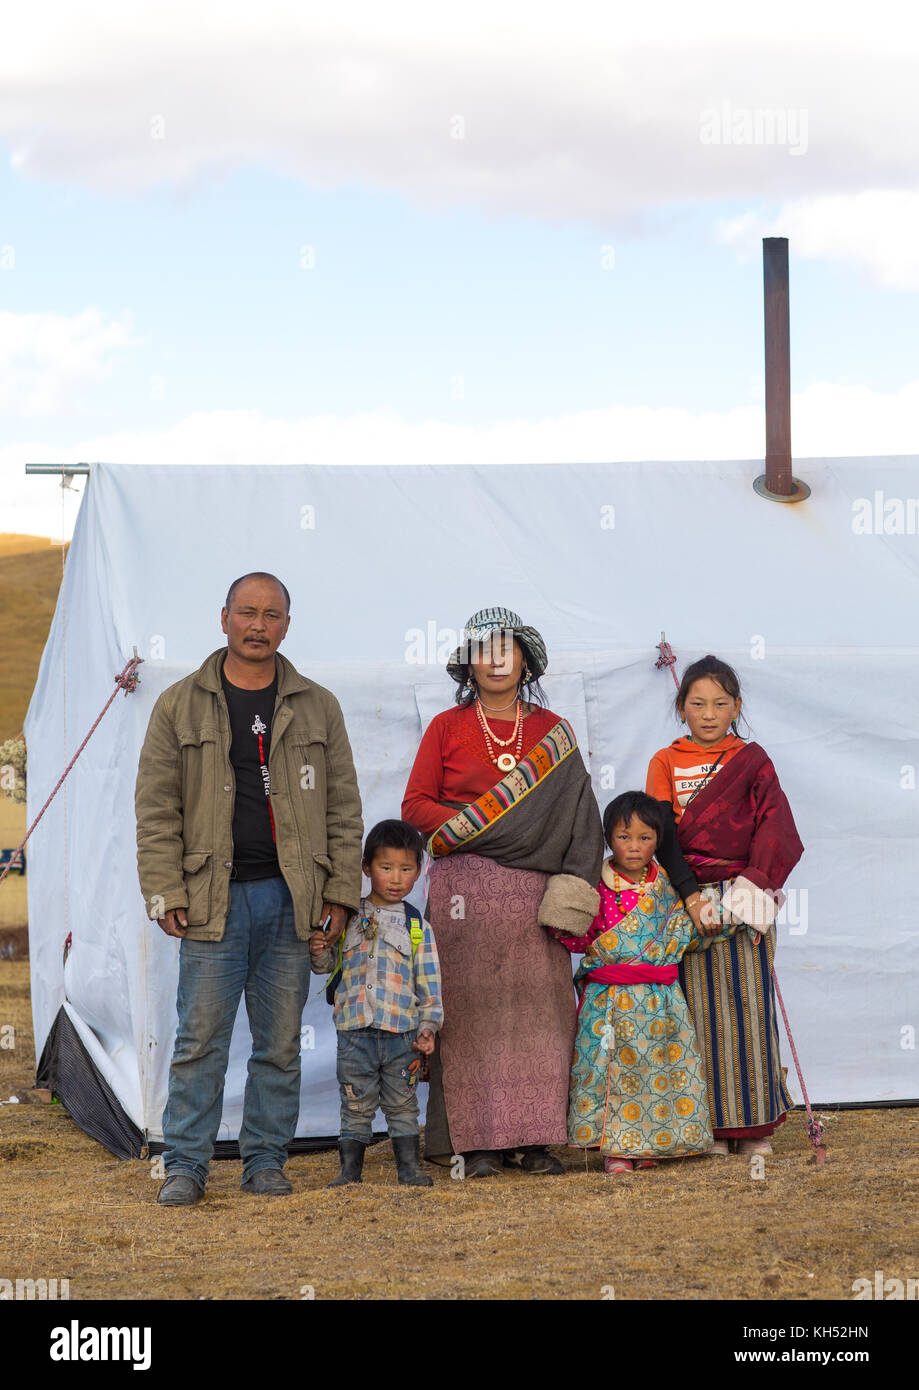 Porträt eines tibetischen Nomaden Familie leben in einem Zelt im Grasland, Provinz Qinghai, Tsekhog, China Stockfoto